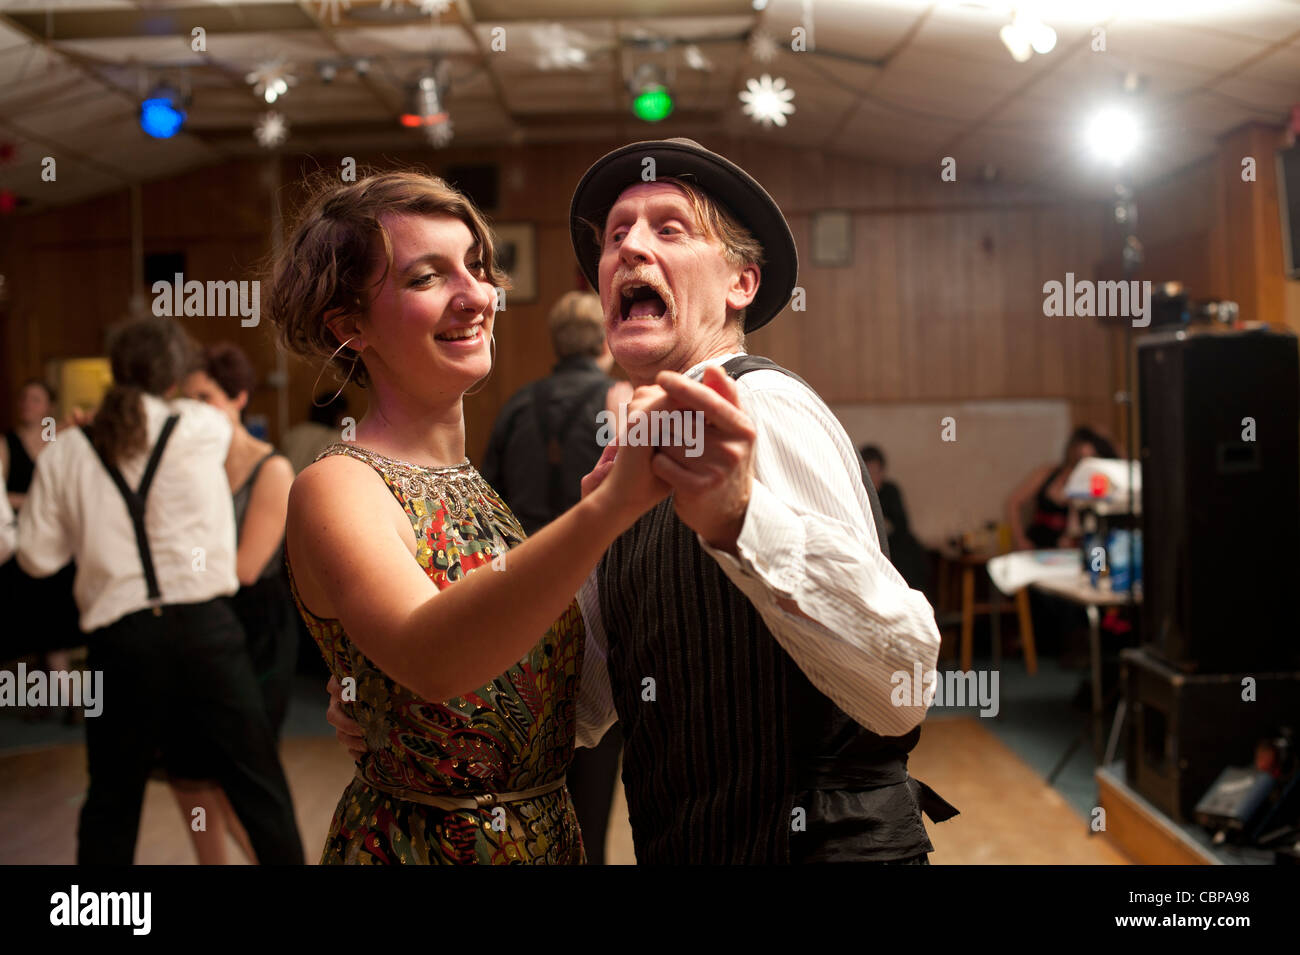 Les gens s'amuser danse swing Lindy hopping et jiving à retro 40s 50s musique à un club, UK Banque D'Images